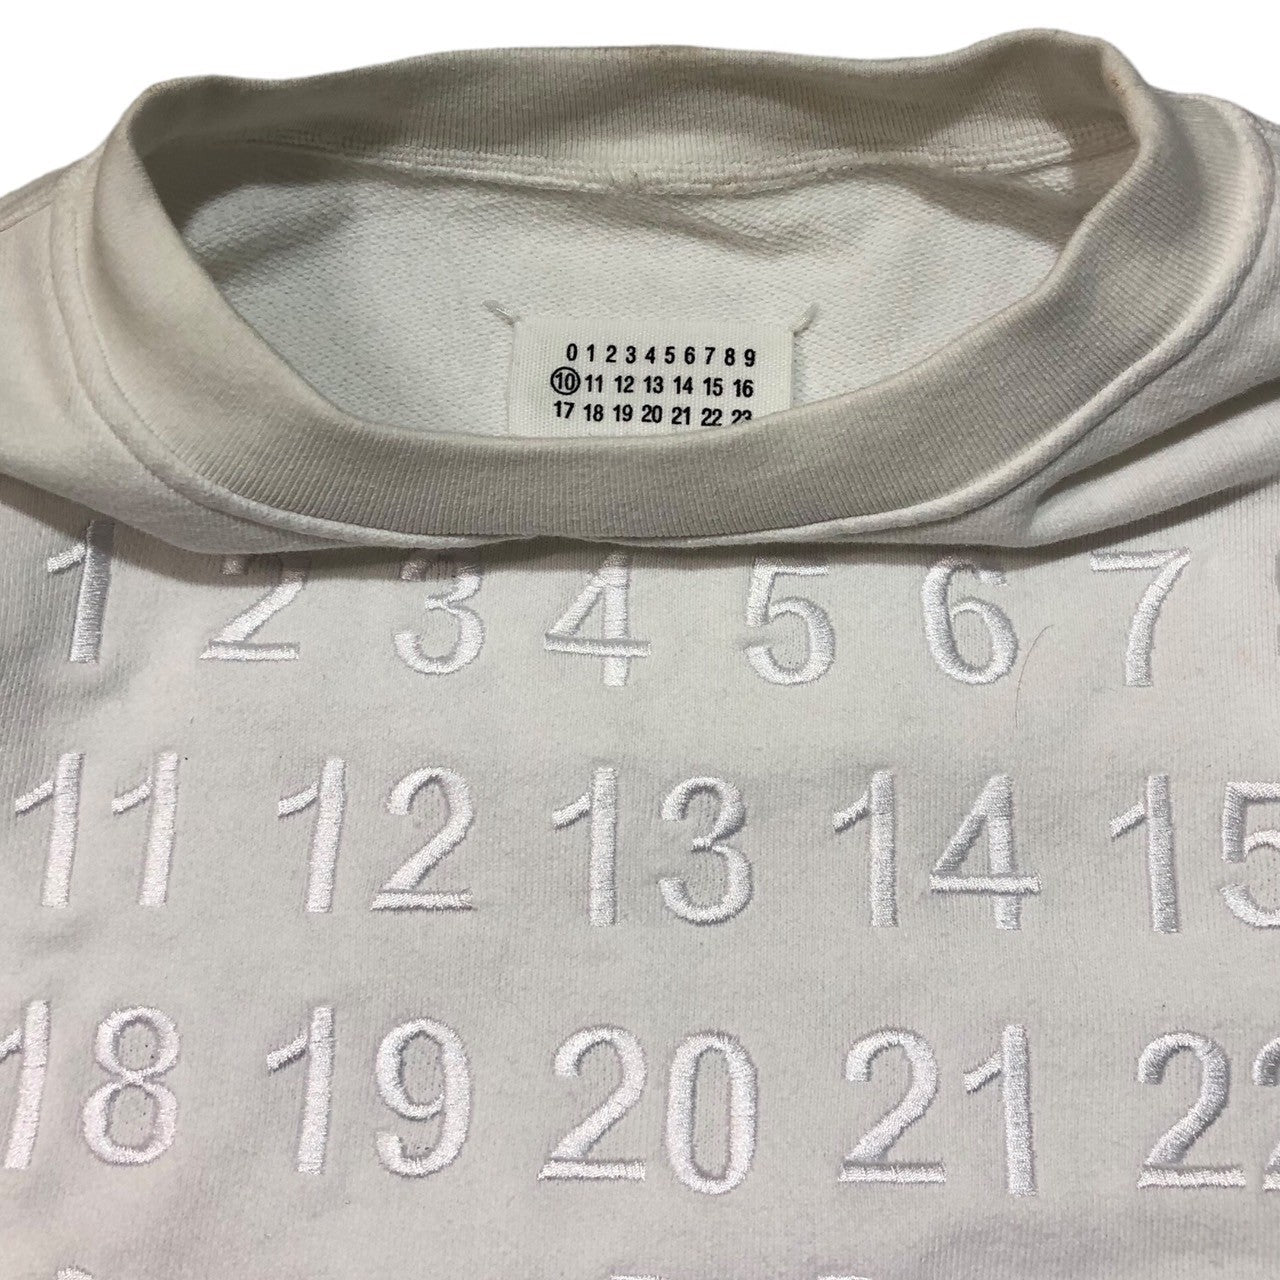 MAISON MARGIELA(メゾンマルジェラ) 20AW Reconstructed Calendar Sweatshirt 再構築 カレンダー  刺繍 ロゴ スウェット ドッキング S50GU0129 46(M程度) ホワイト×グレー